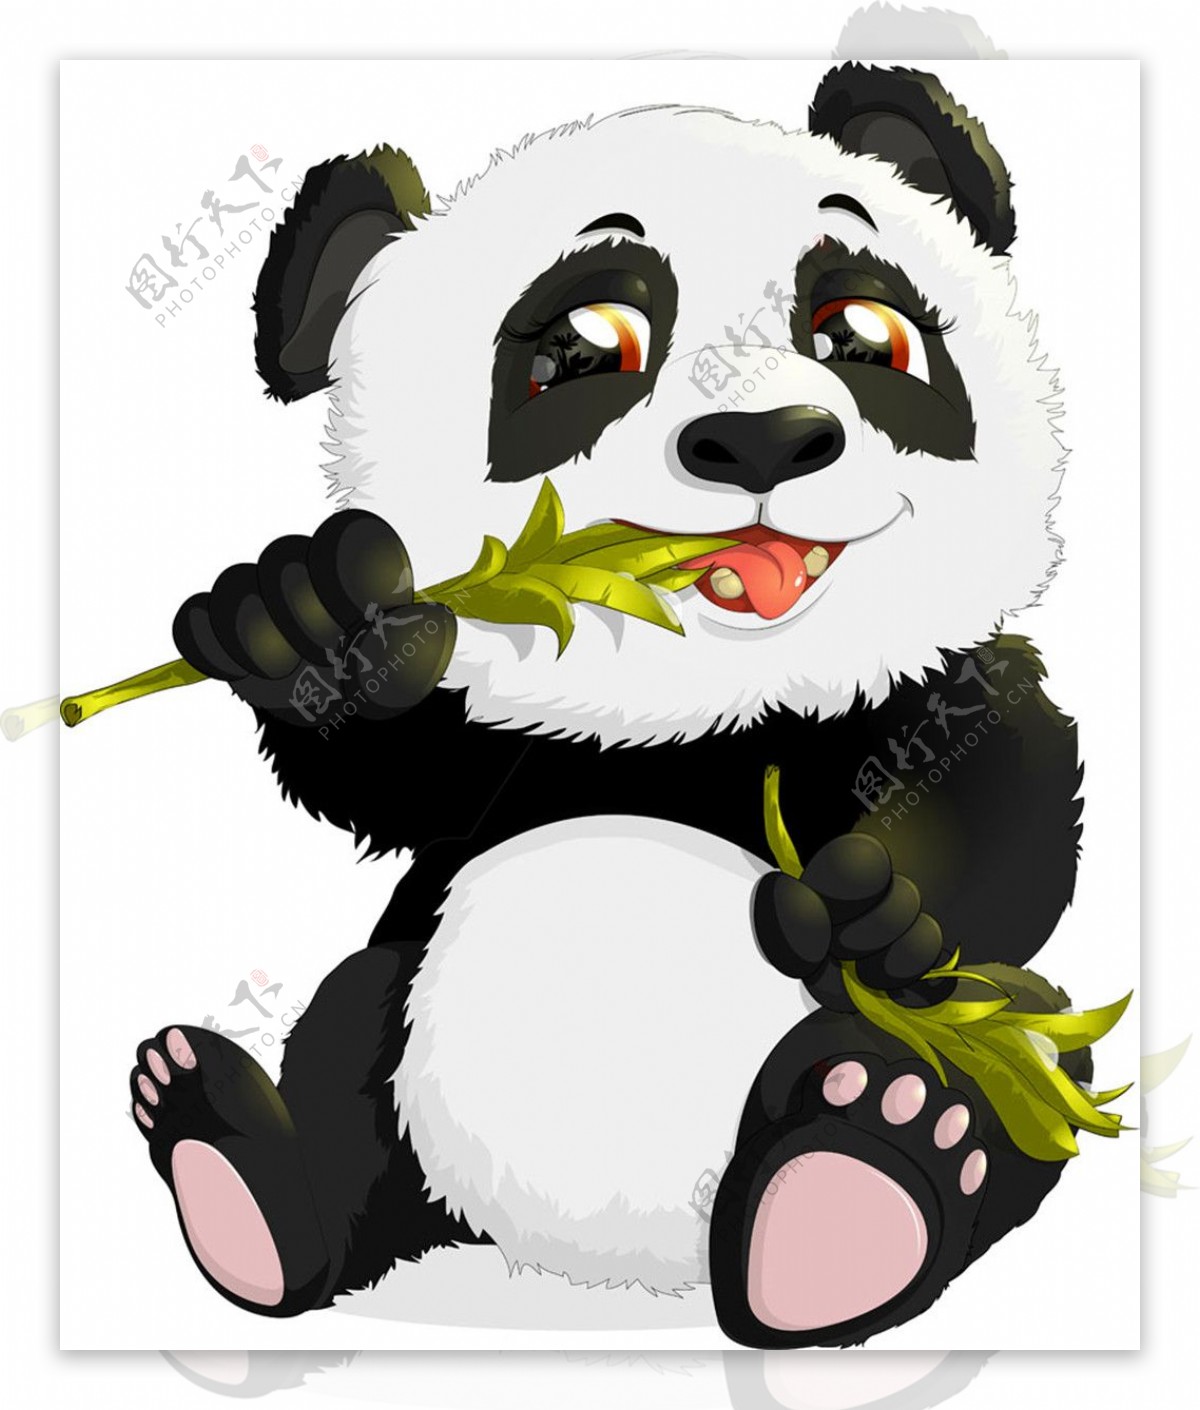 吃竹叶的熊猫图片